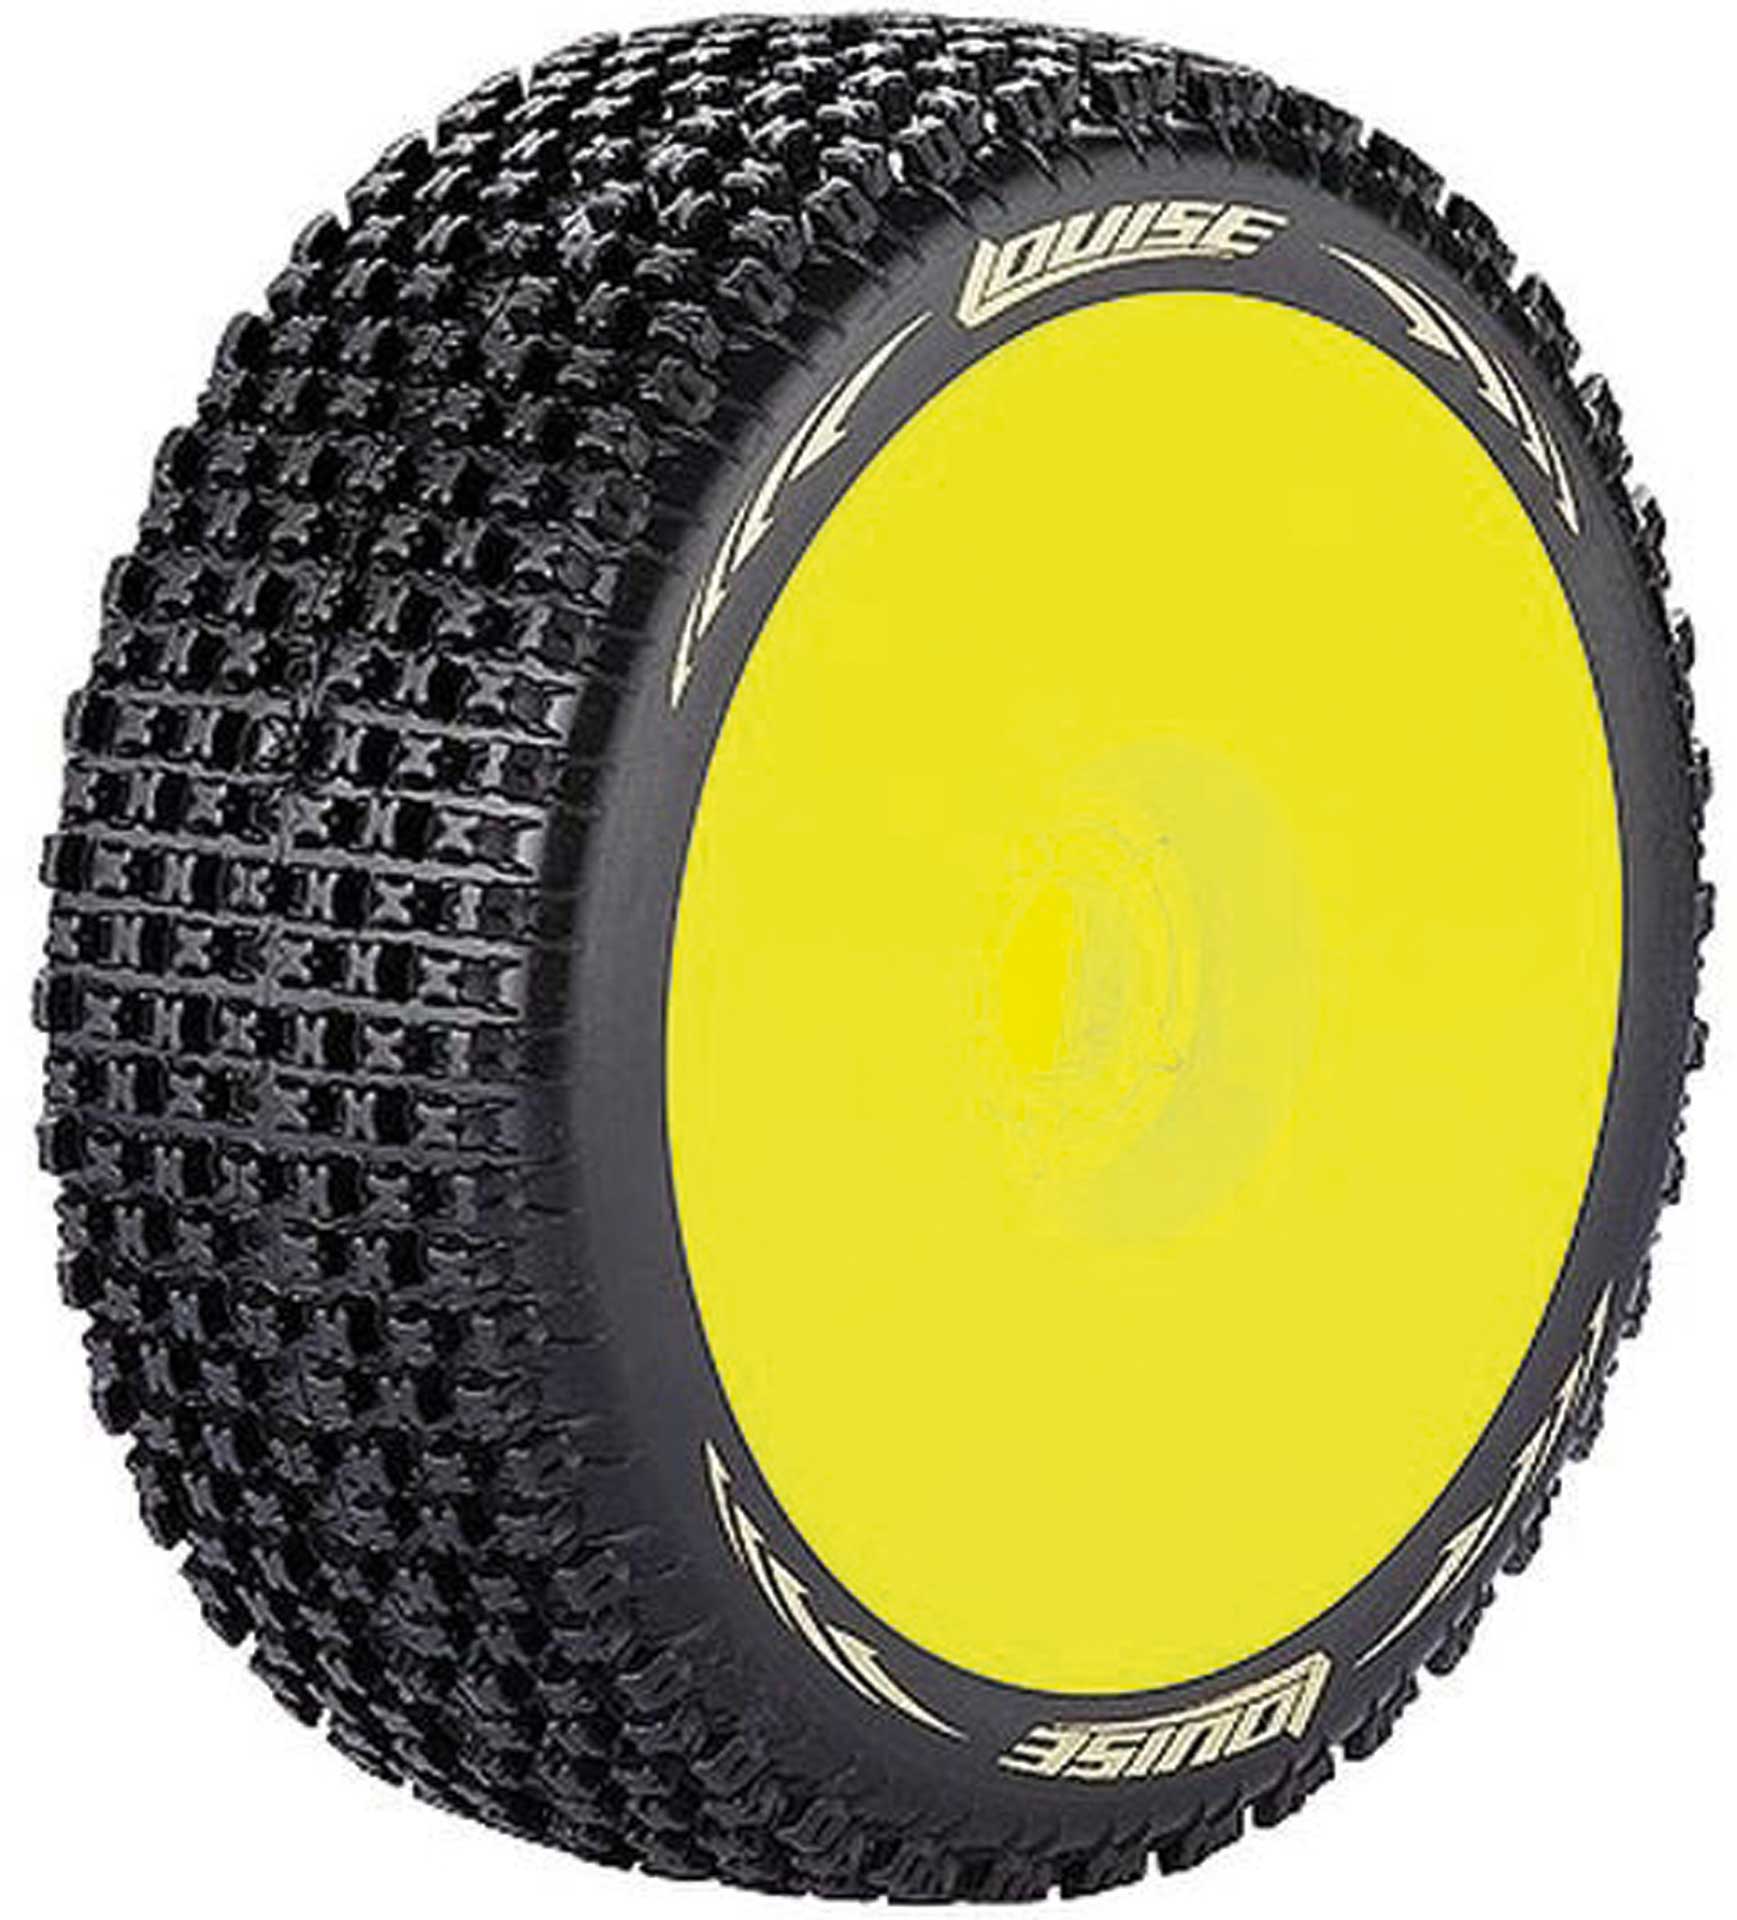 LOUISE B-Pirate Reifen supersoft auf Felge gelb 17mm (2)